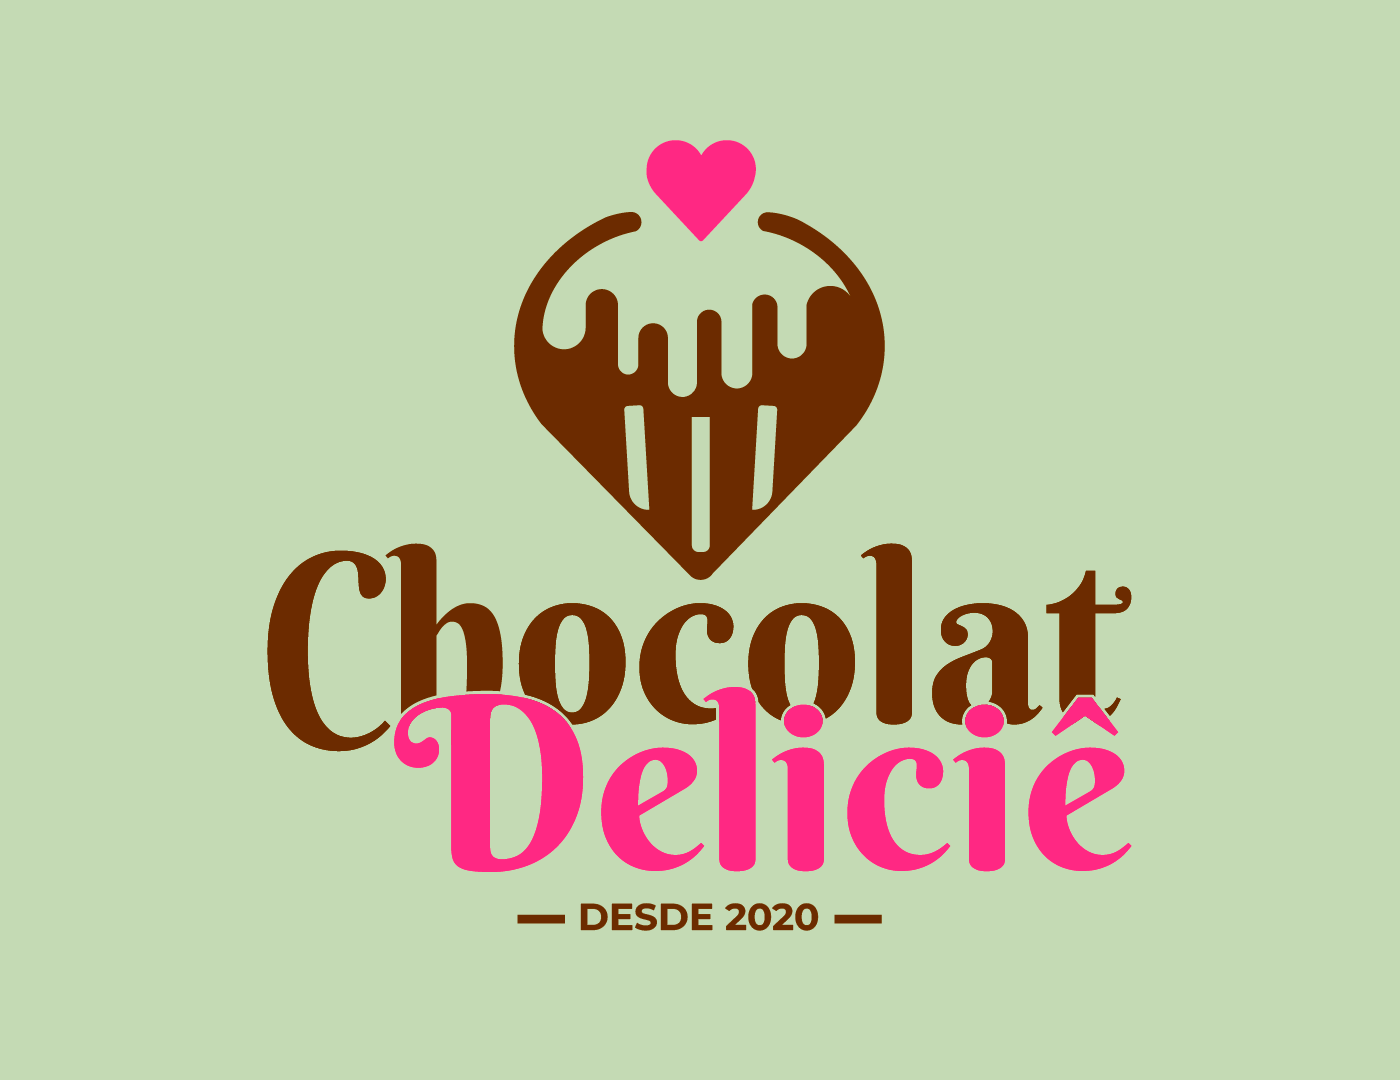 identidade visual doceria doces design visual identity Logo Design chocolate culinária comida marca